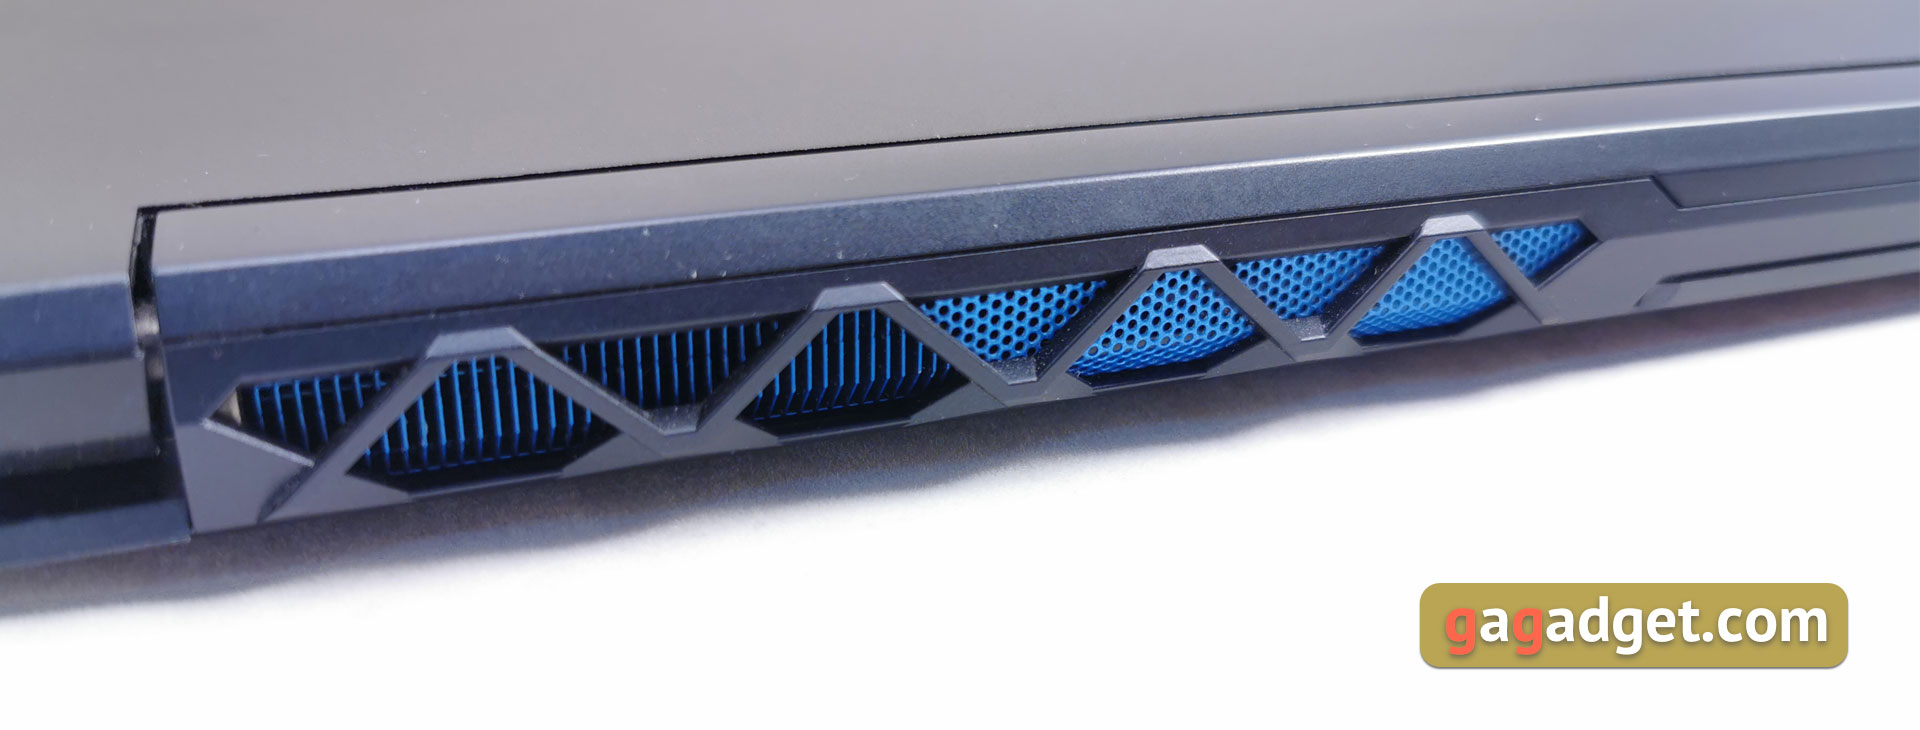 Recenzja Acer Predator Triton 500: laptop do gier z RTX 2080 Max-Q w zwartej, lekkiej obudowie-10